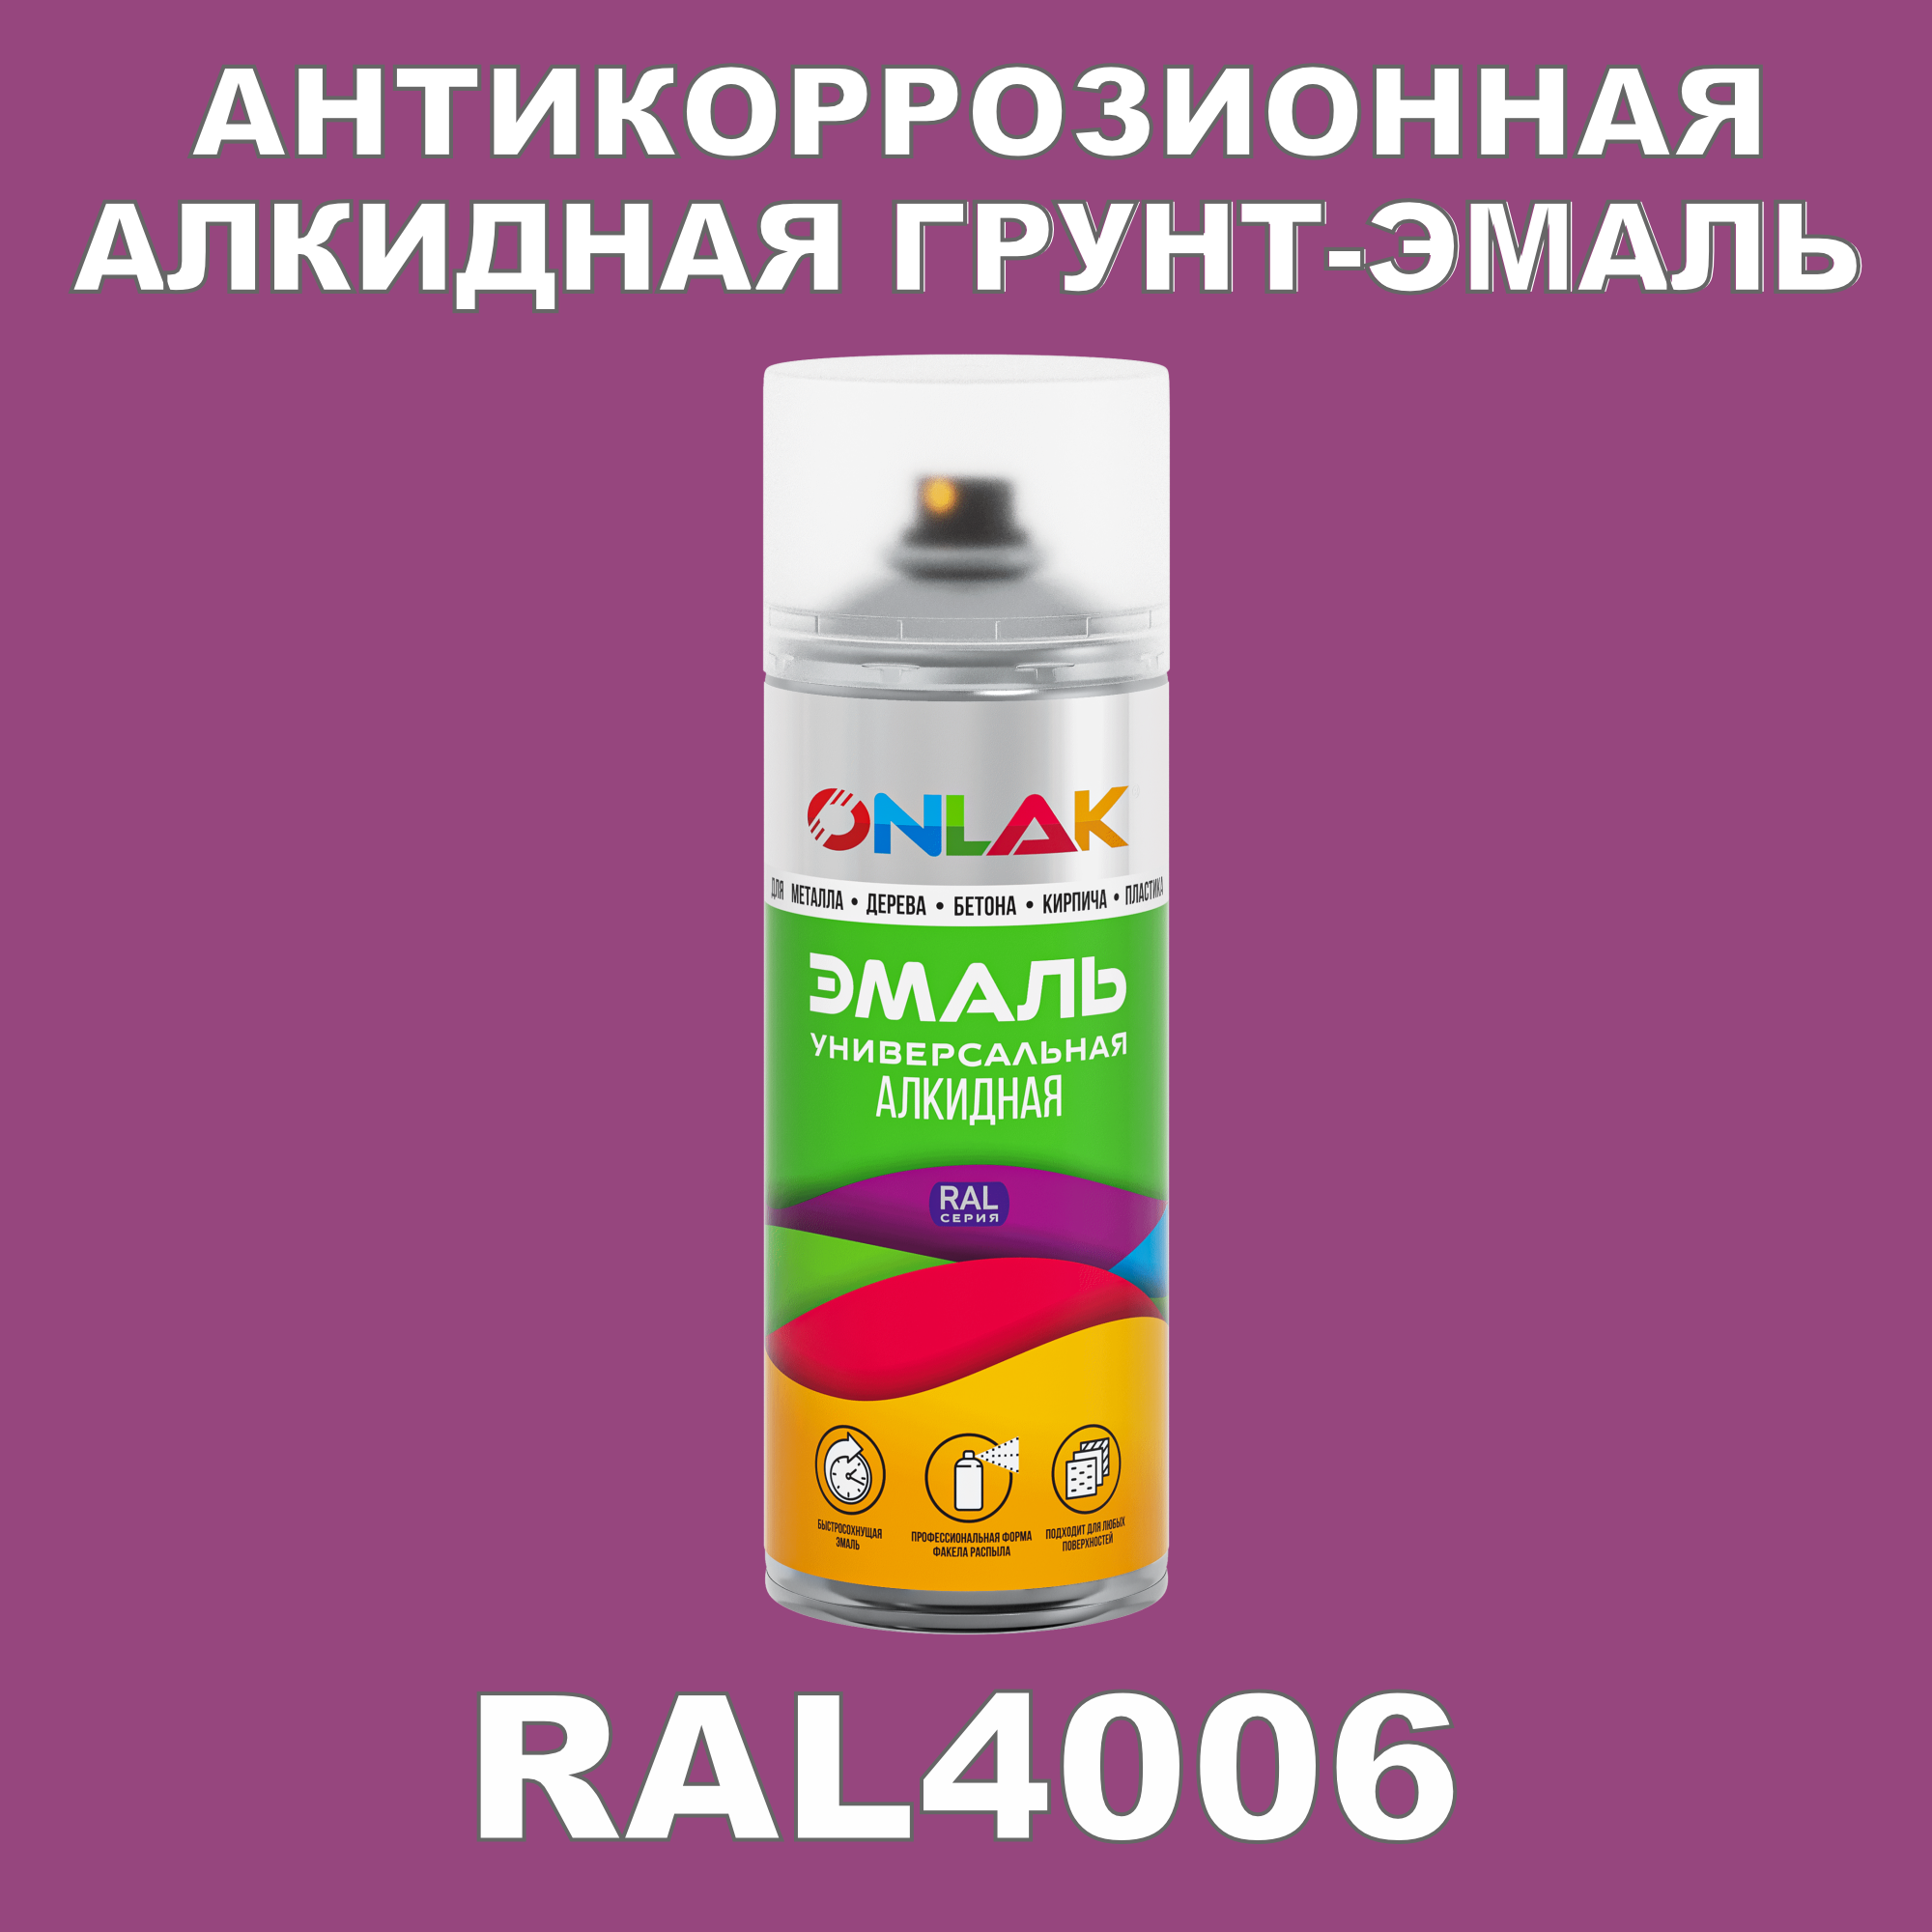 Антикоррозионная грунт-эмаль ONLAK RAL4006 полуматовая для металла и защиты от ржавчины